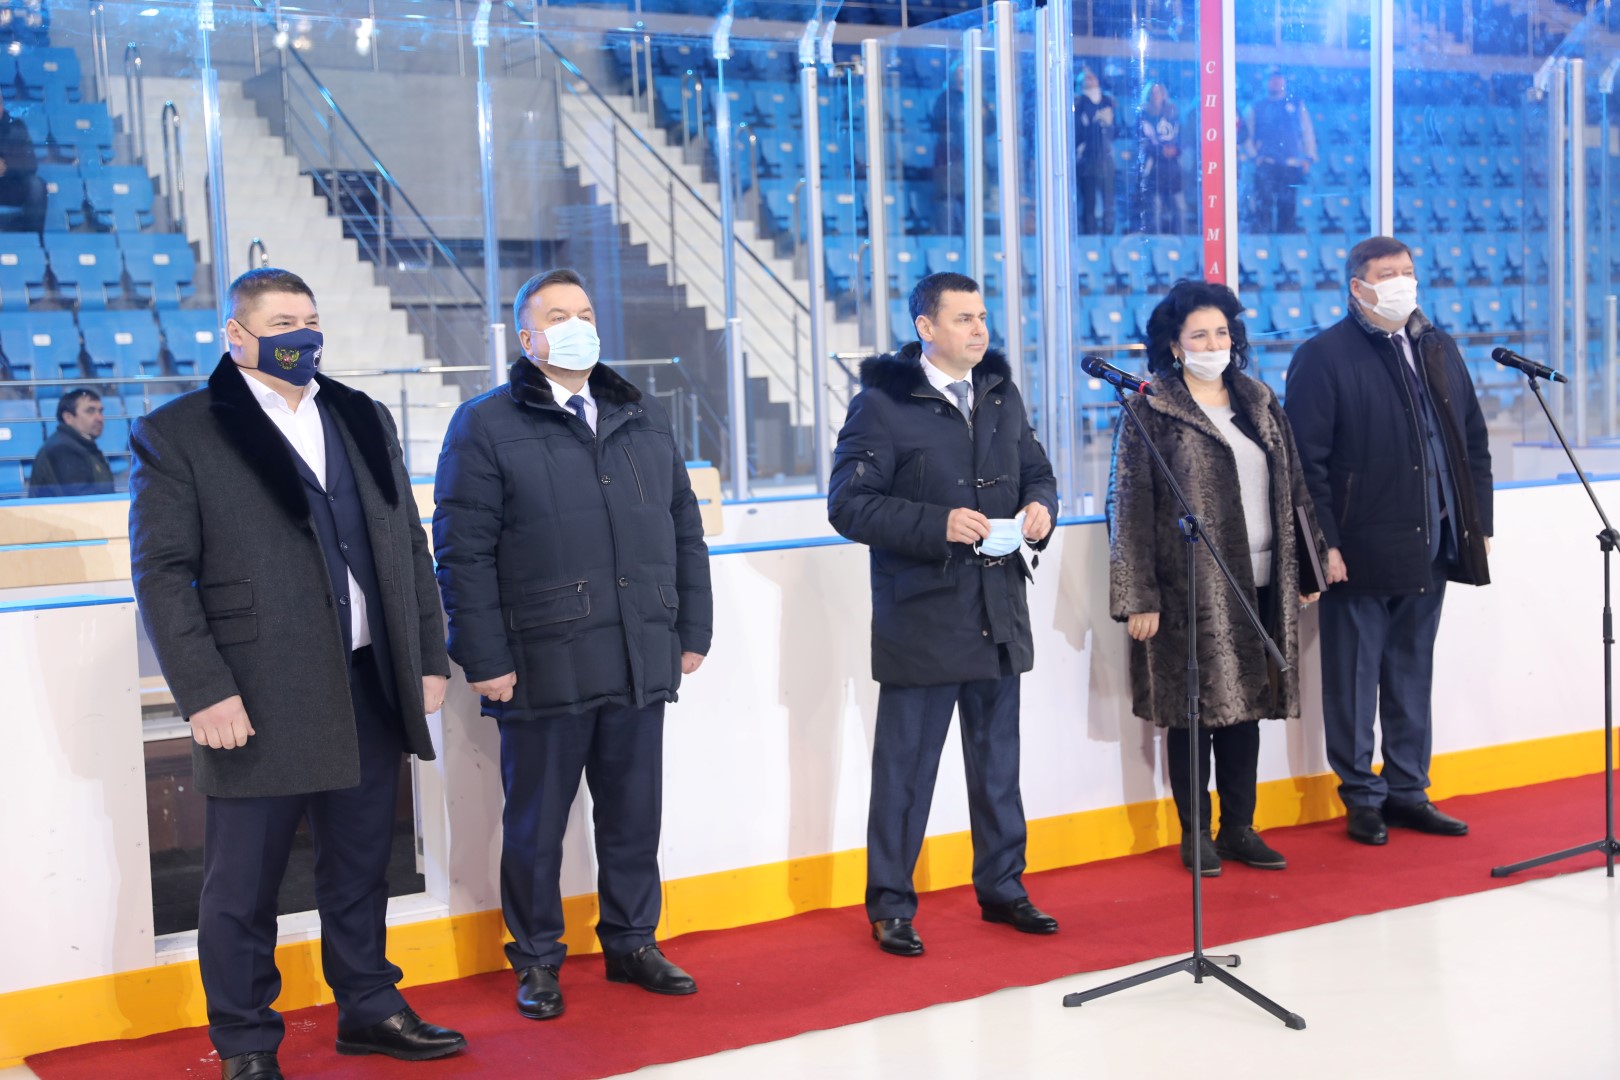 Дмитрий Миронов посетил первый в Ярославле матч по следж-хоккею